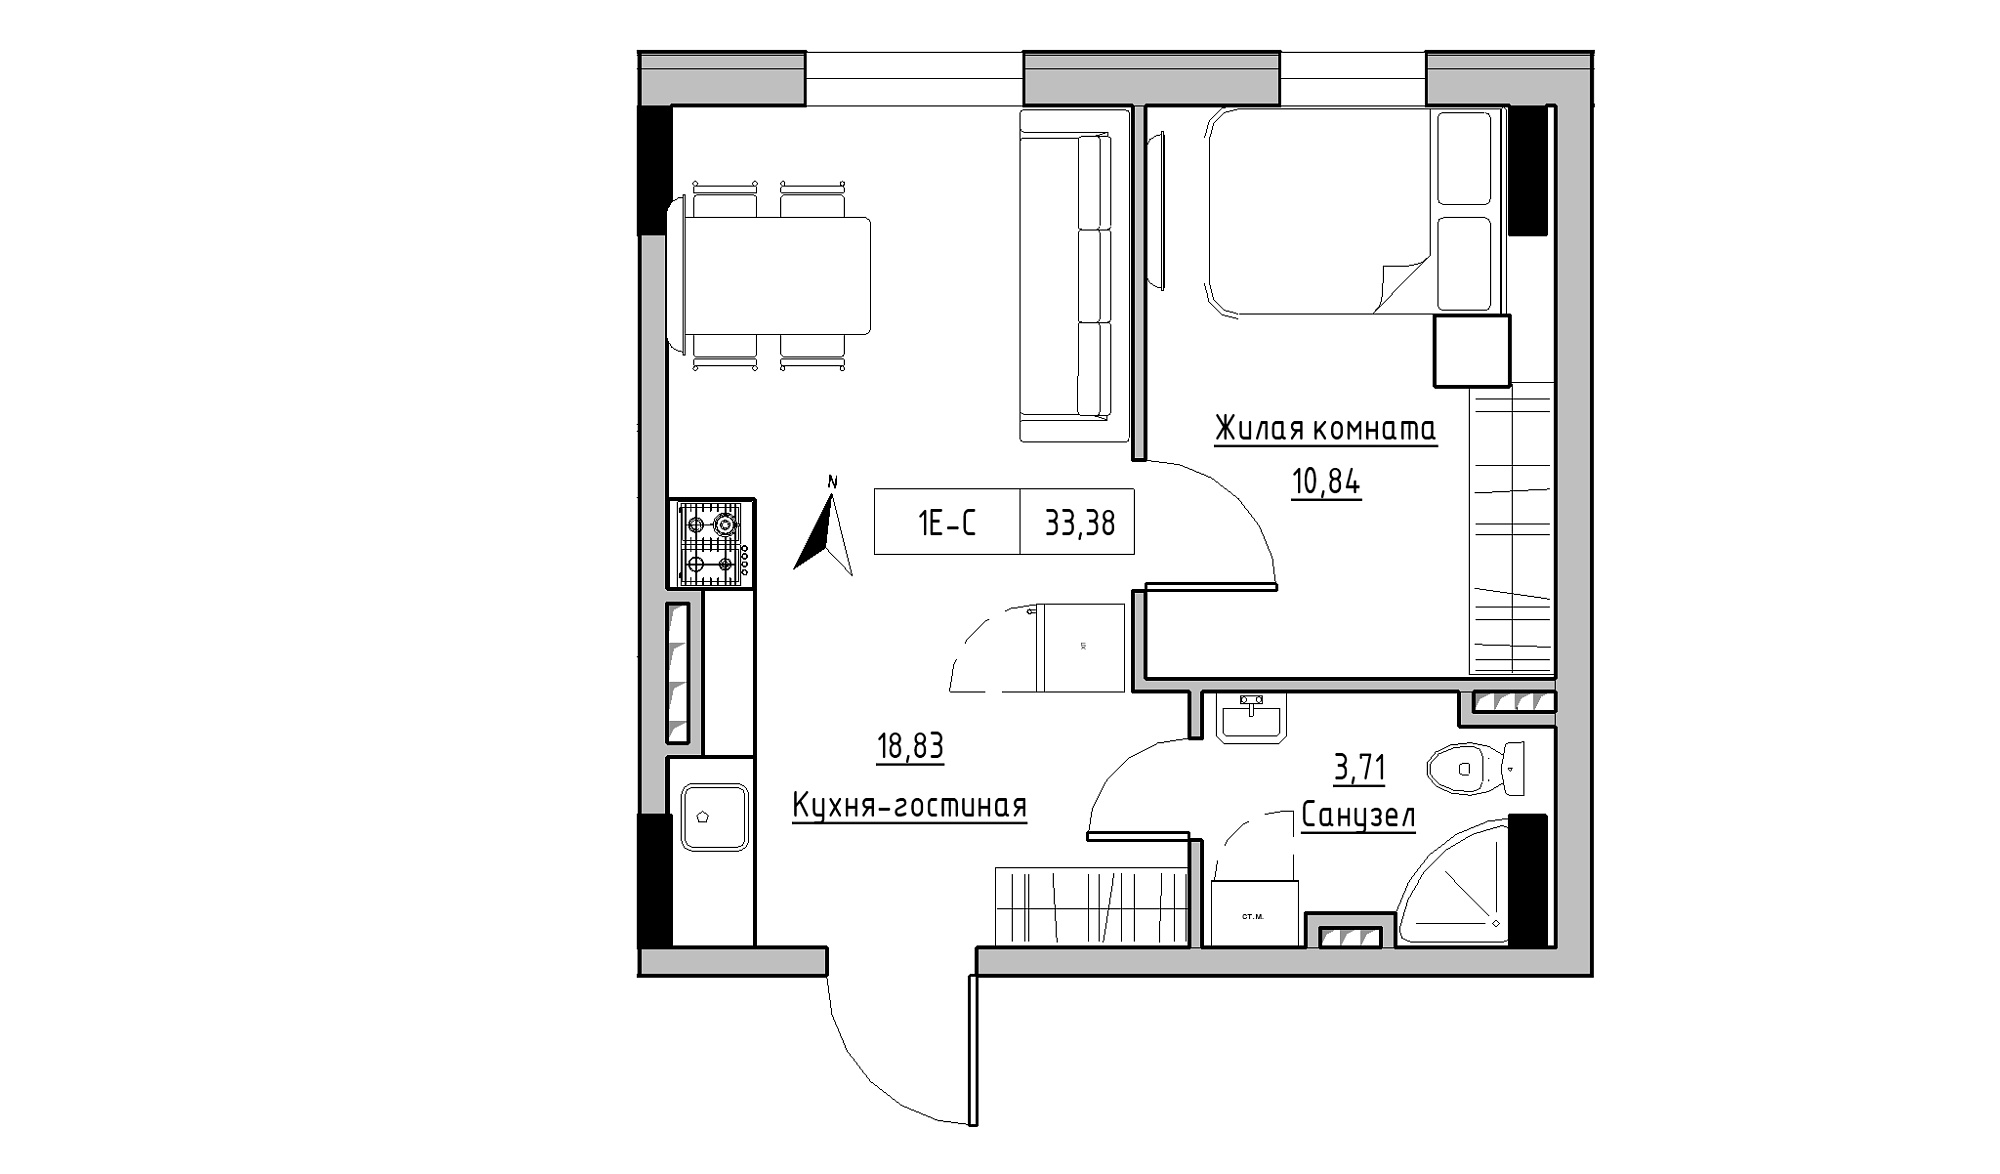 Планировка 1-к квартира площей 33.38м2, KS-025-03/0010.